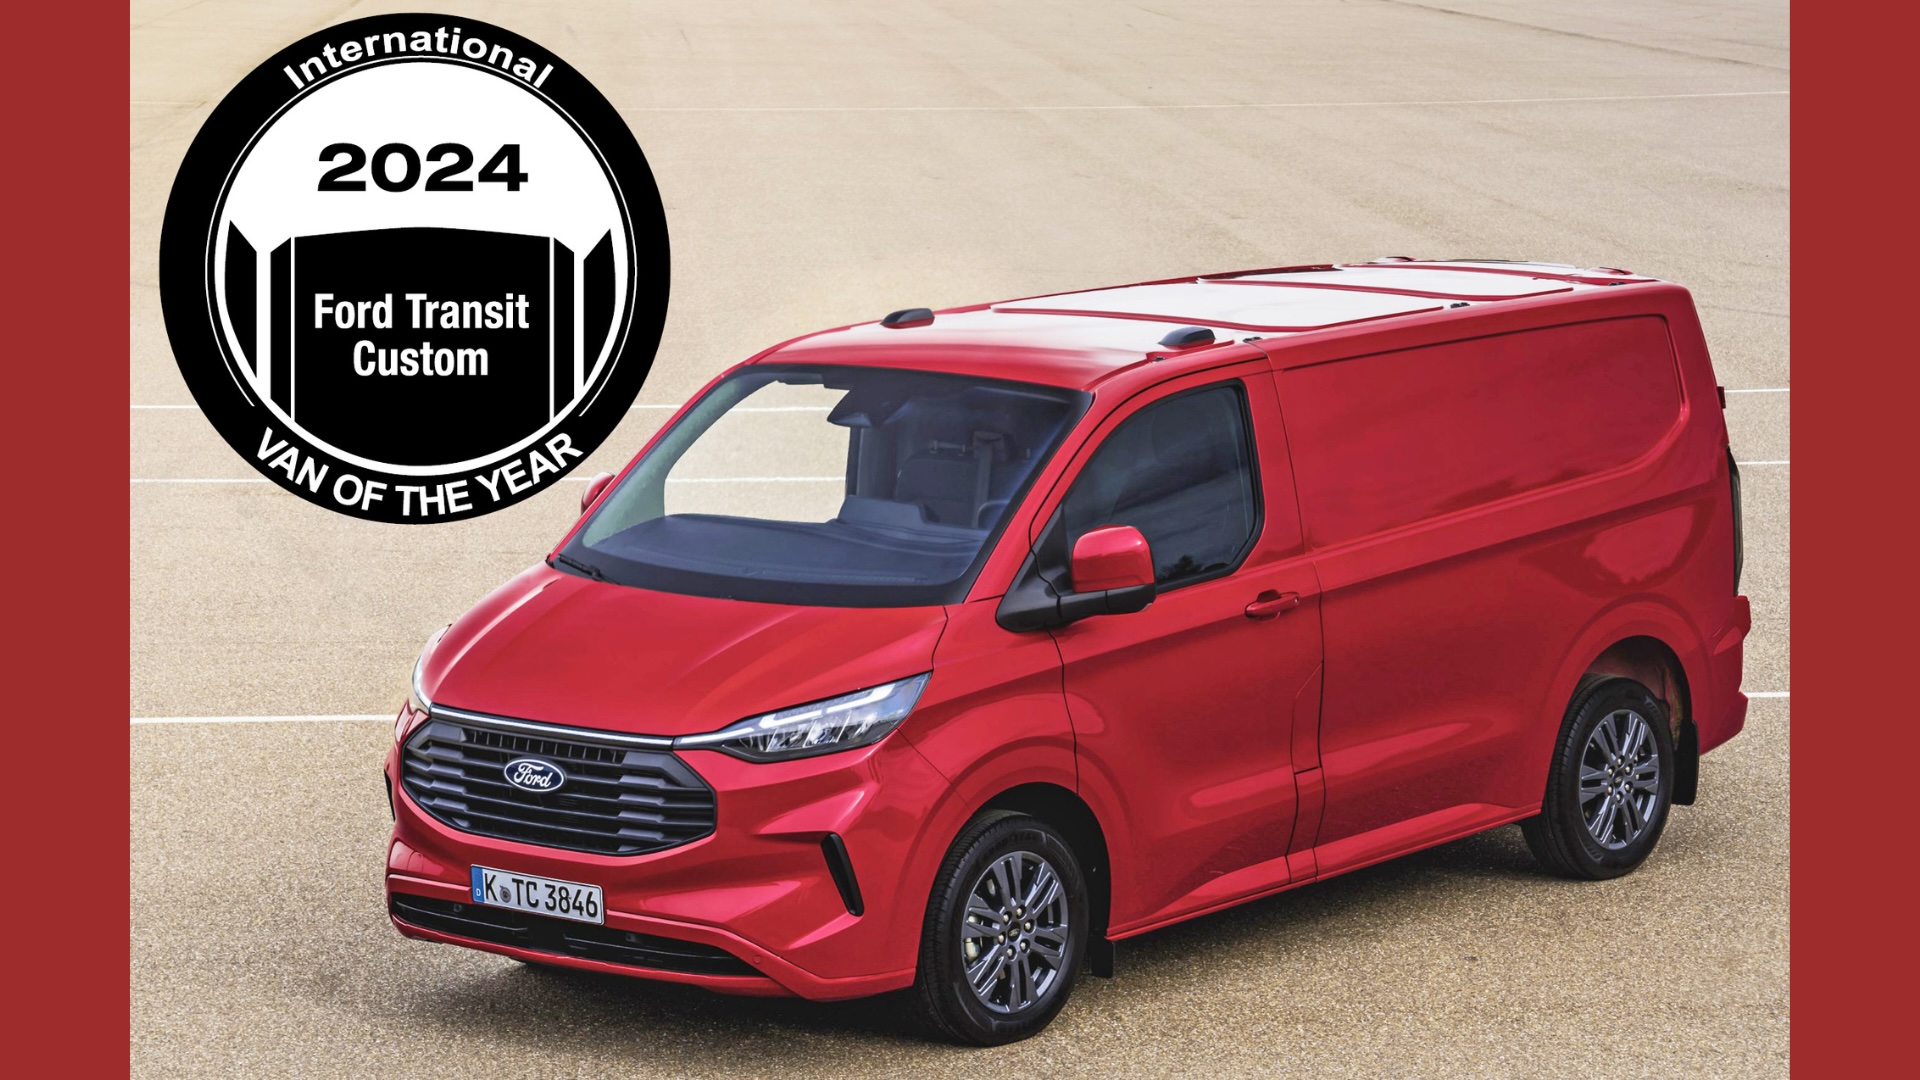 High five:  ‘International Van of the Year Award’ voor Ford Transit bij het winnen van de titel in 2024!